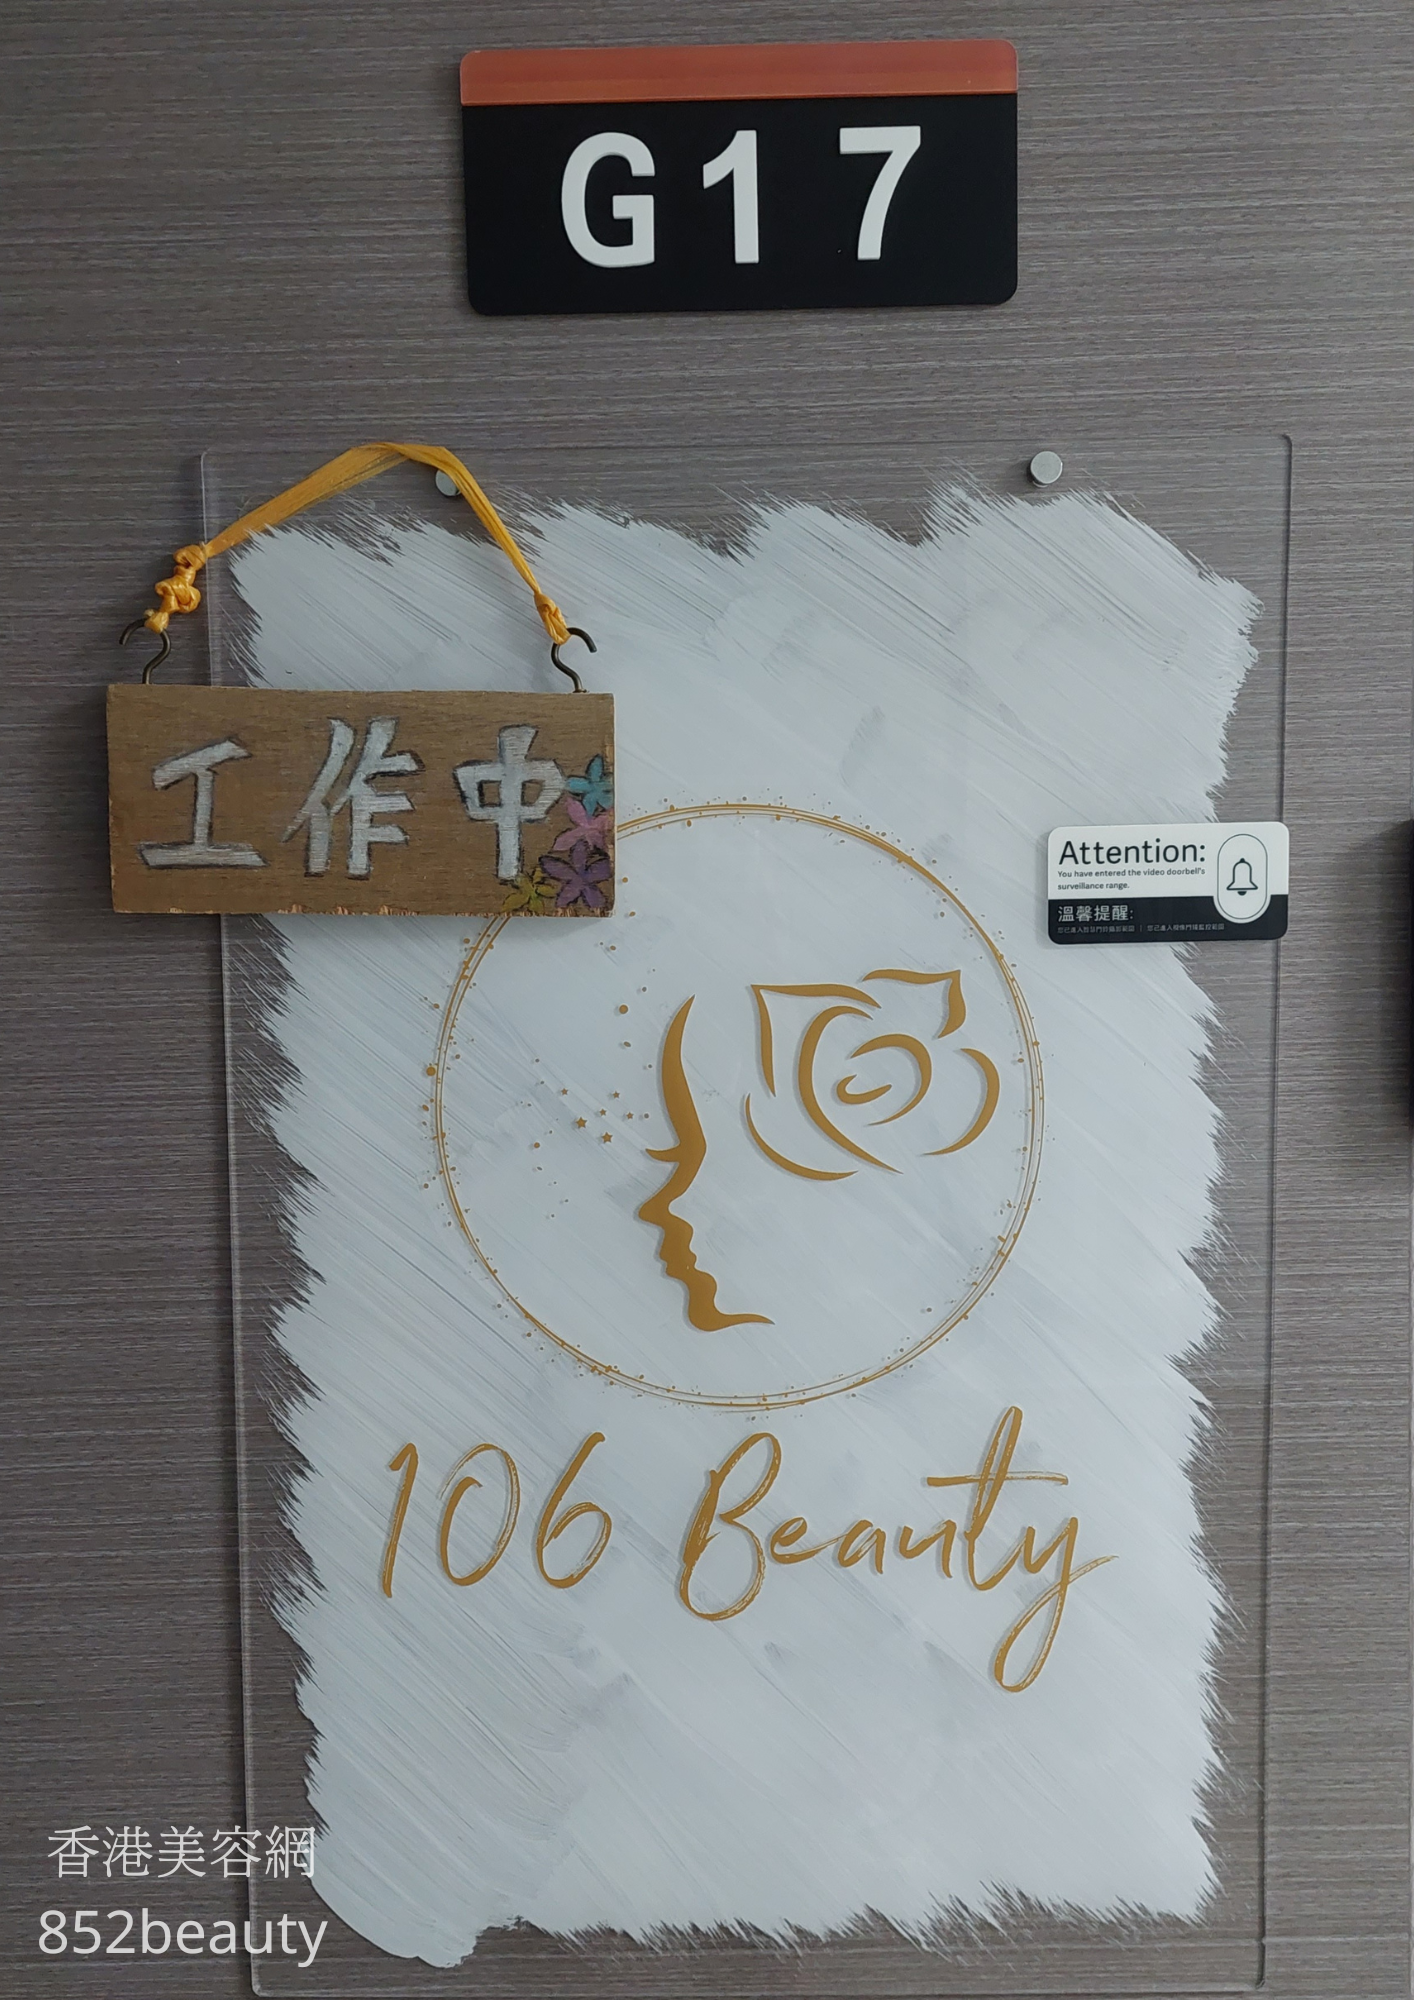 Eyelashes: 106 Beauty